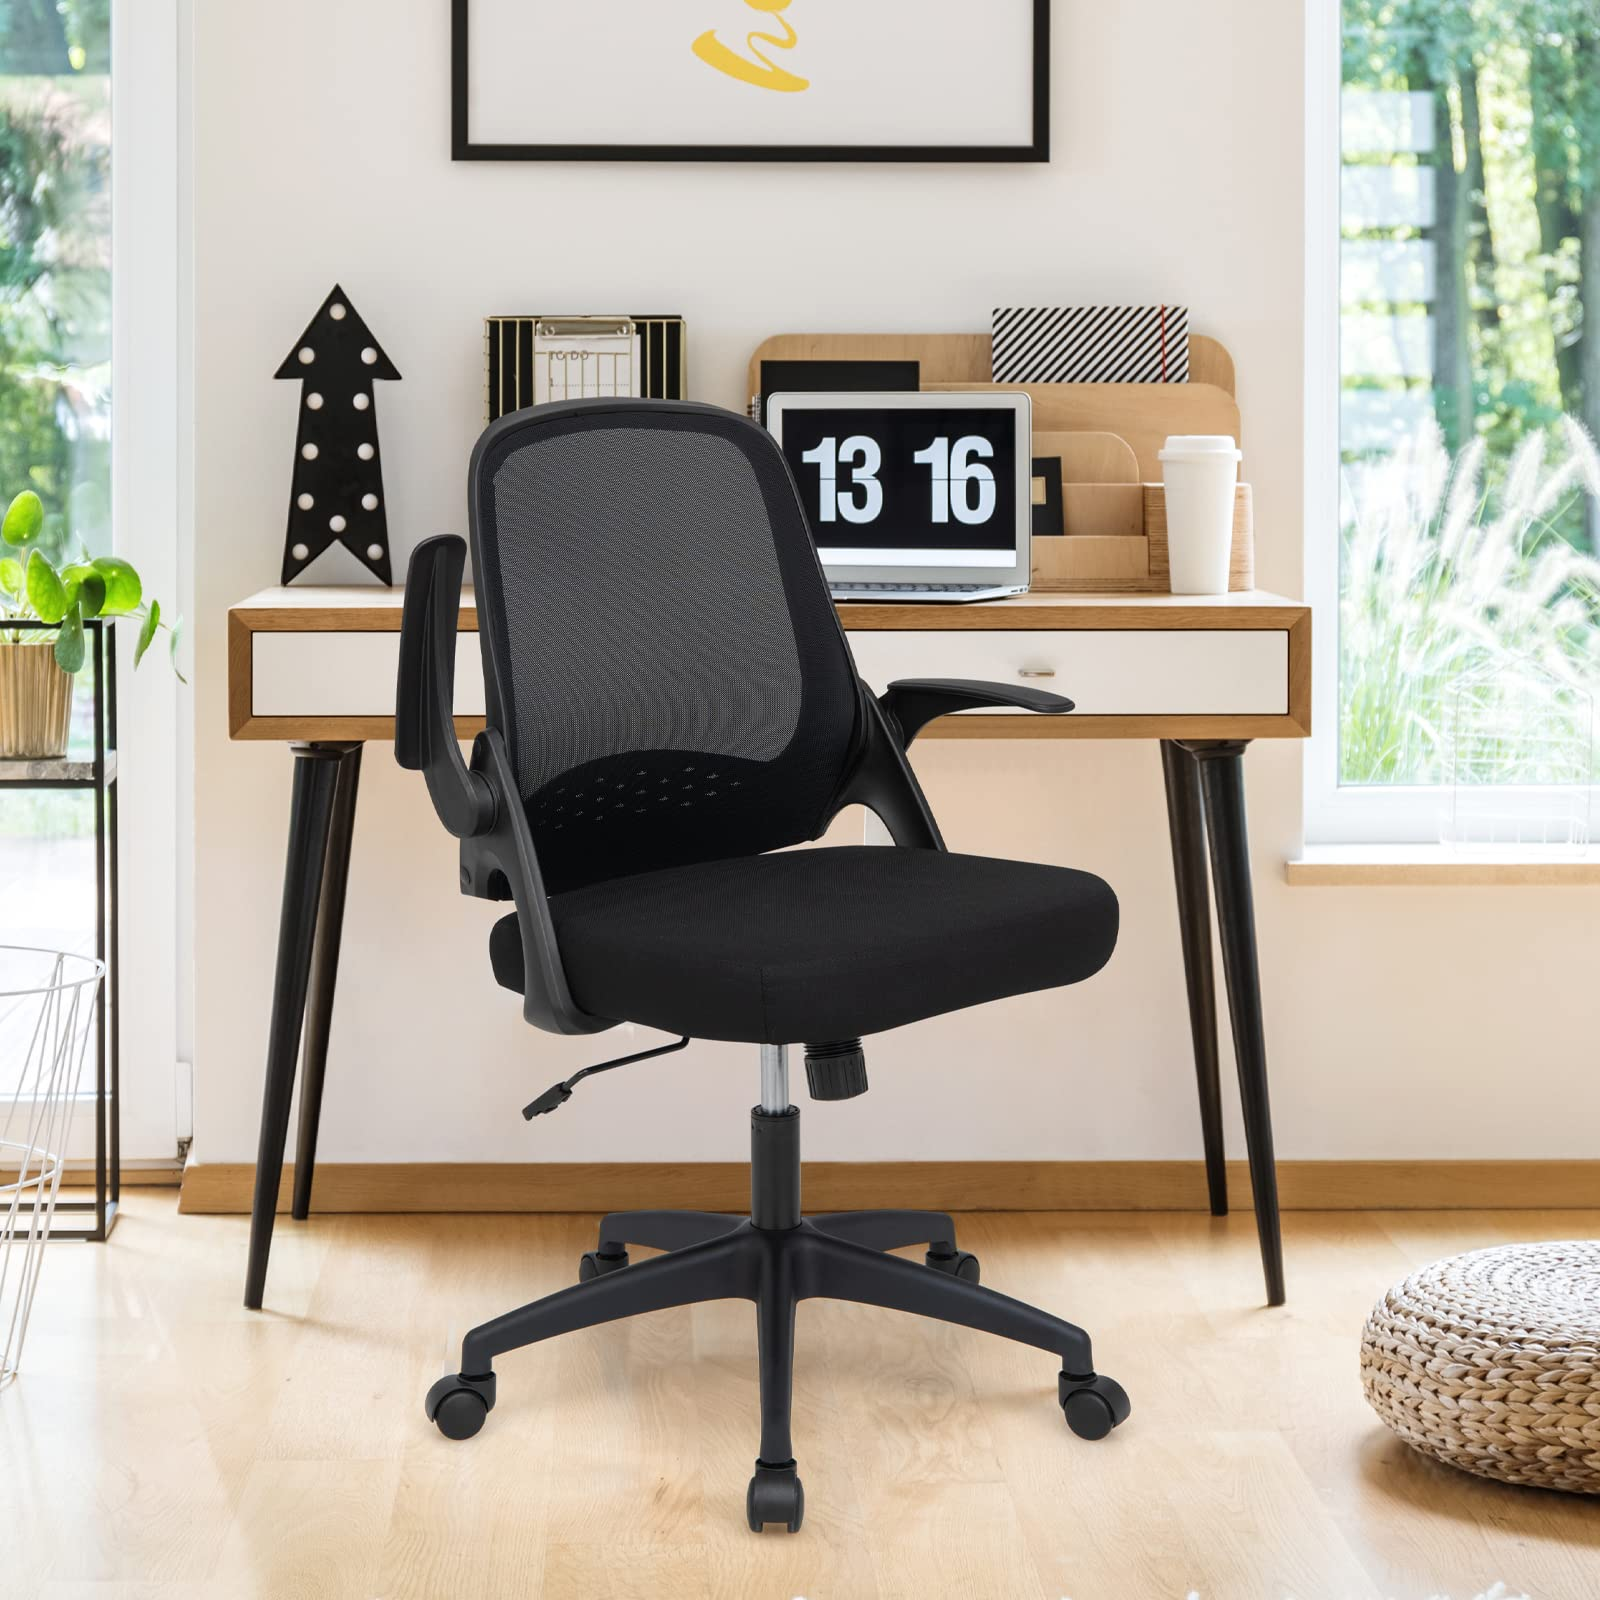 Giantex Office Chair, Ergonomic Desk Chair